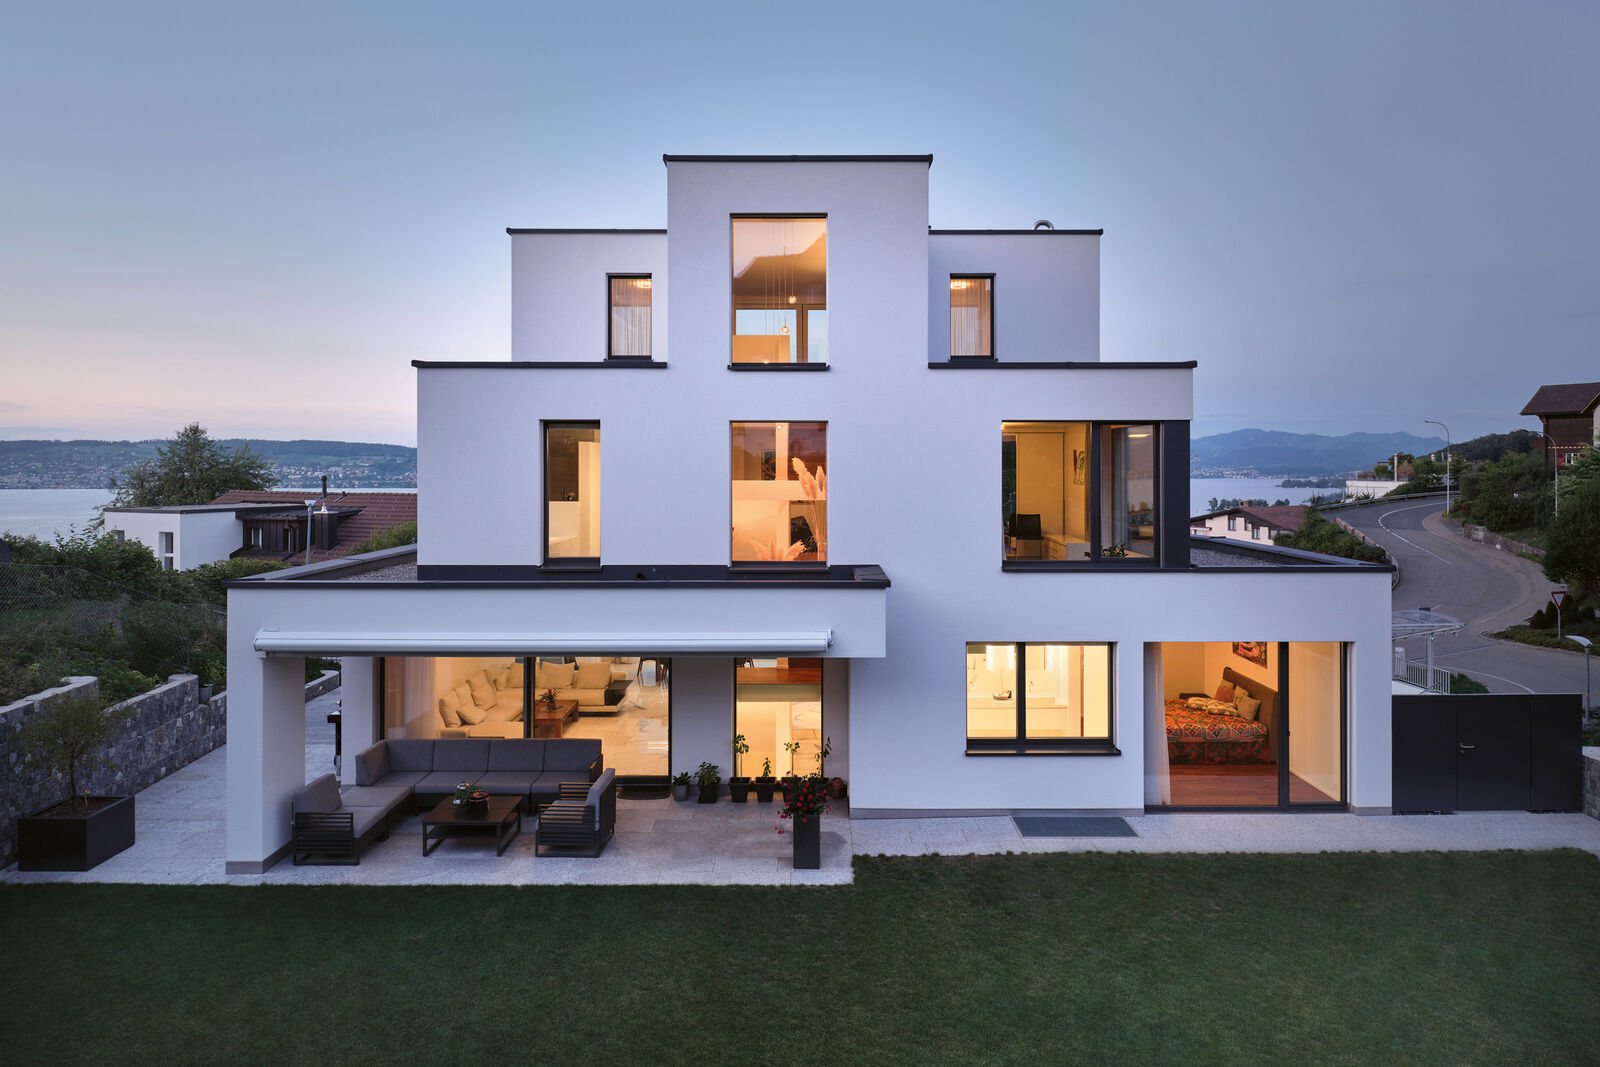 Eine ausbalancierte Architektur macht das Haus elegant. © Karin Nuetzi-Weisz